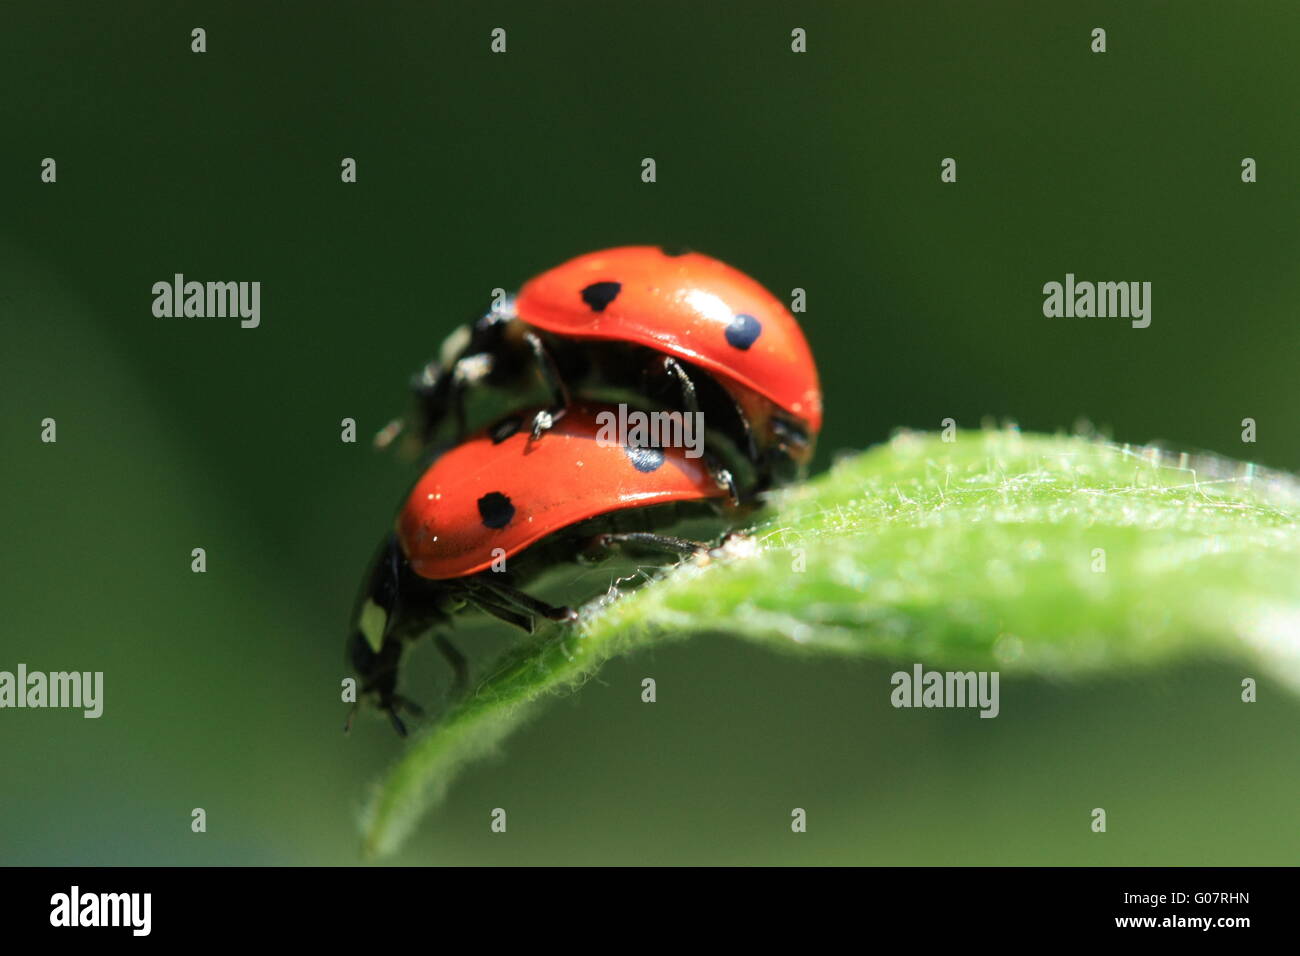 Two ladybugs mating Stock Photo